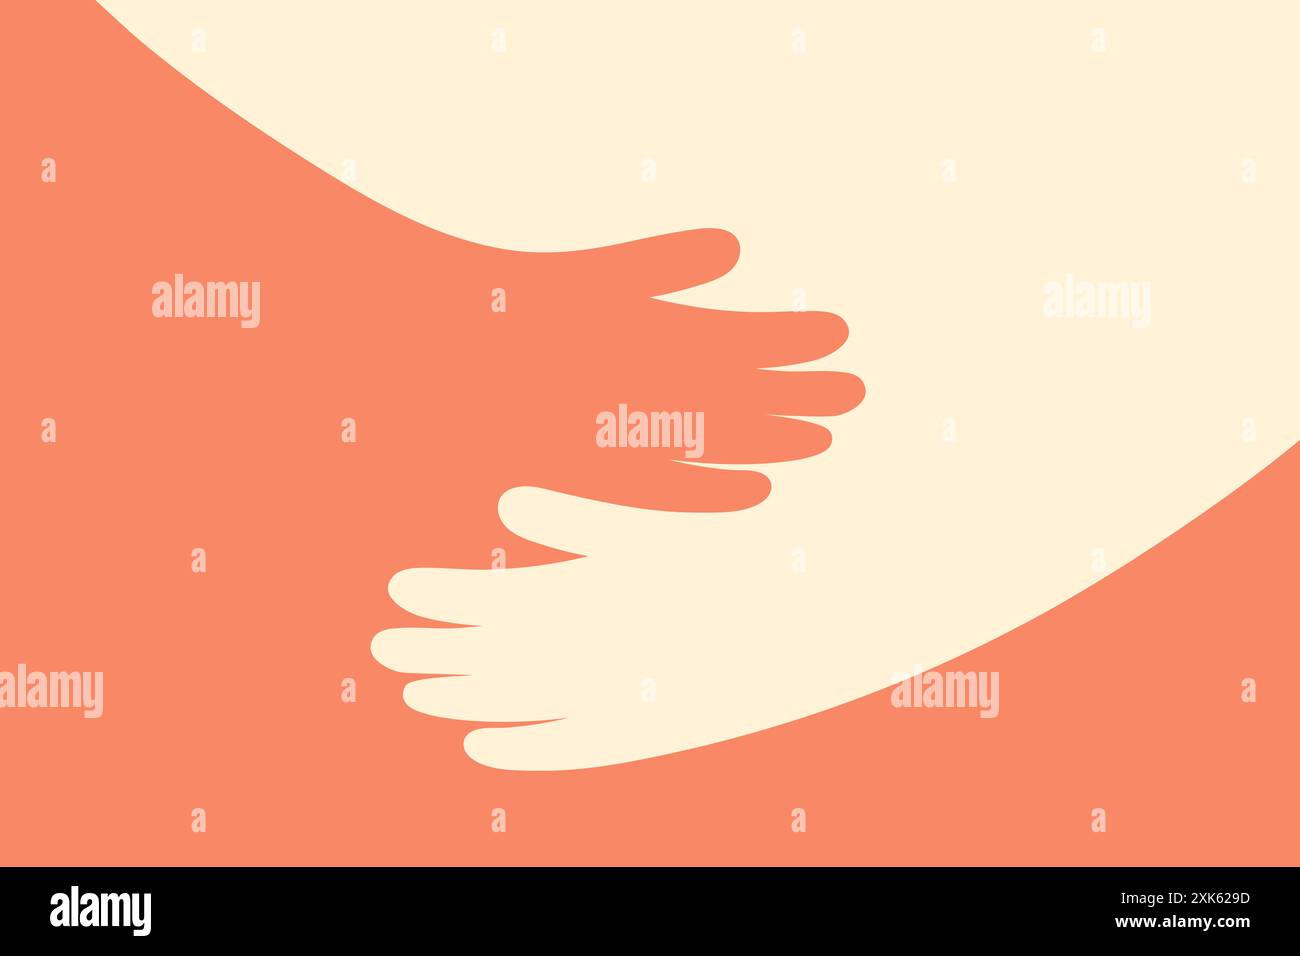 Une illustration minimaliste de mains embrassant, symbolisant le soutien, le soin et l'amour. Idéal pour les visuels de charité et de soutien émotionnel. Illustration de Vecteur